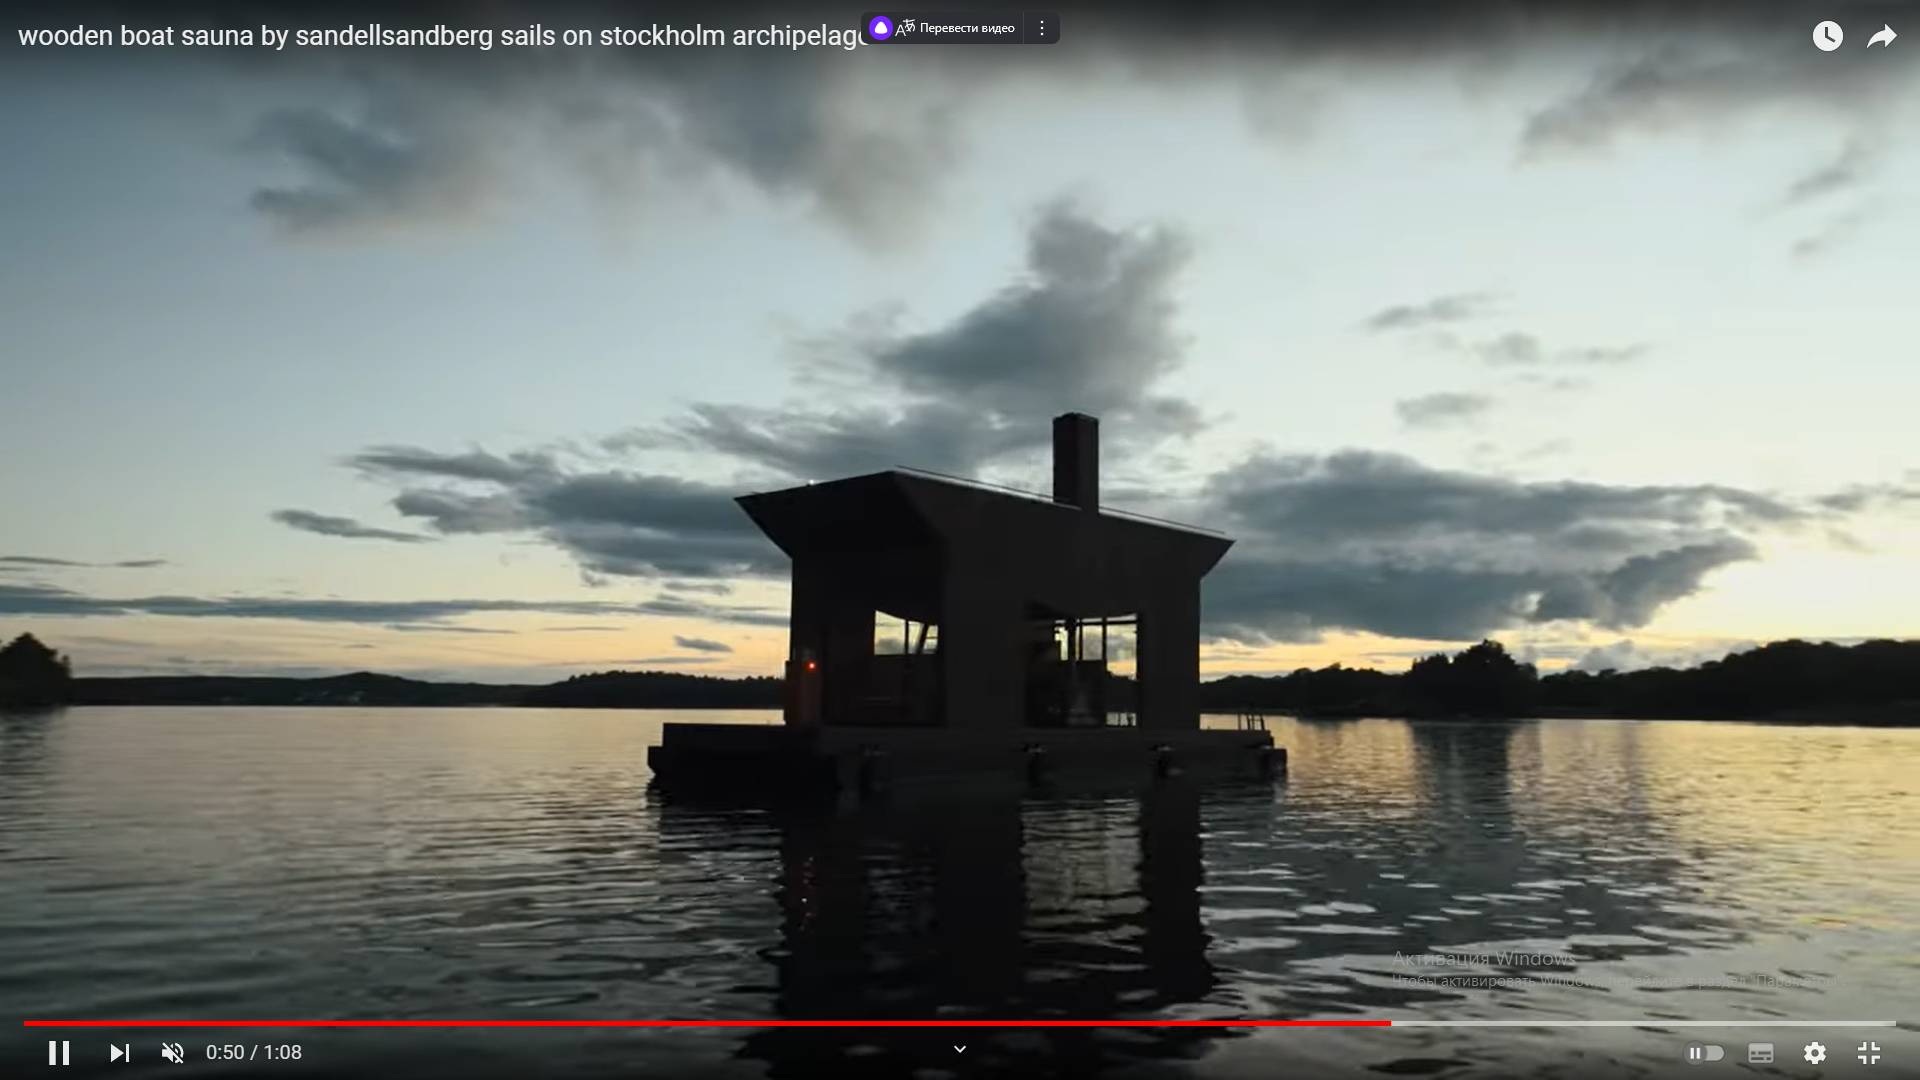 Цитата из видео «wooden boat sauna by sandellsandberg sails on stockholm archipelago» пользователя designboom, youtube.com